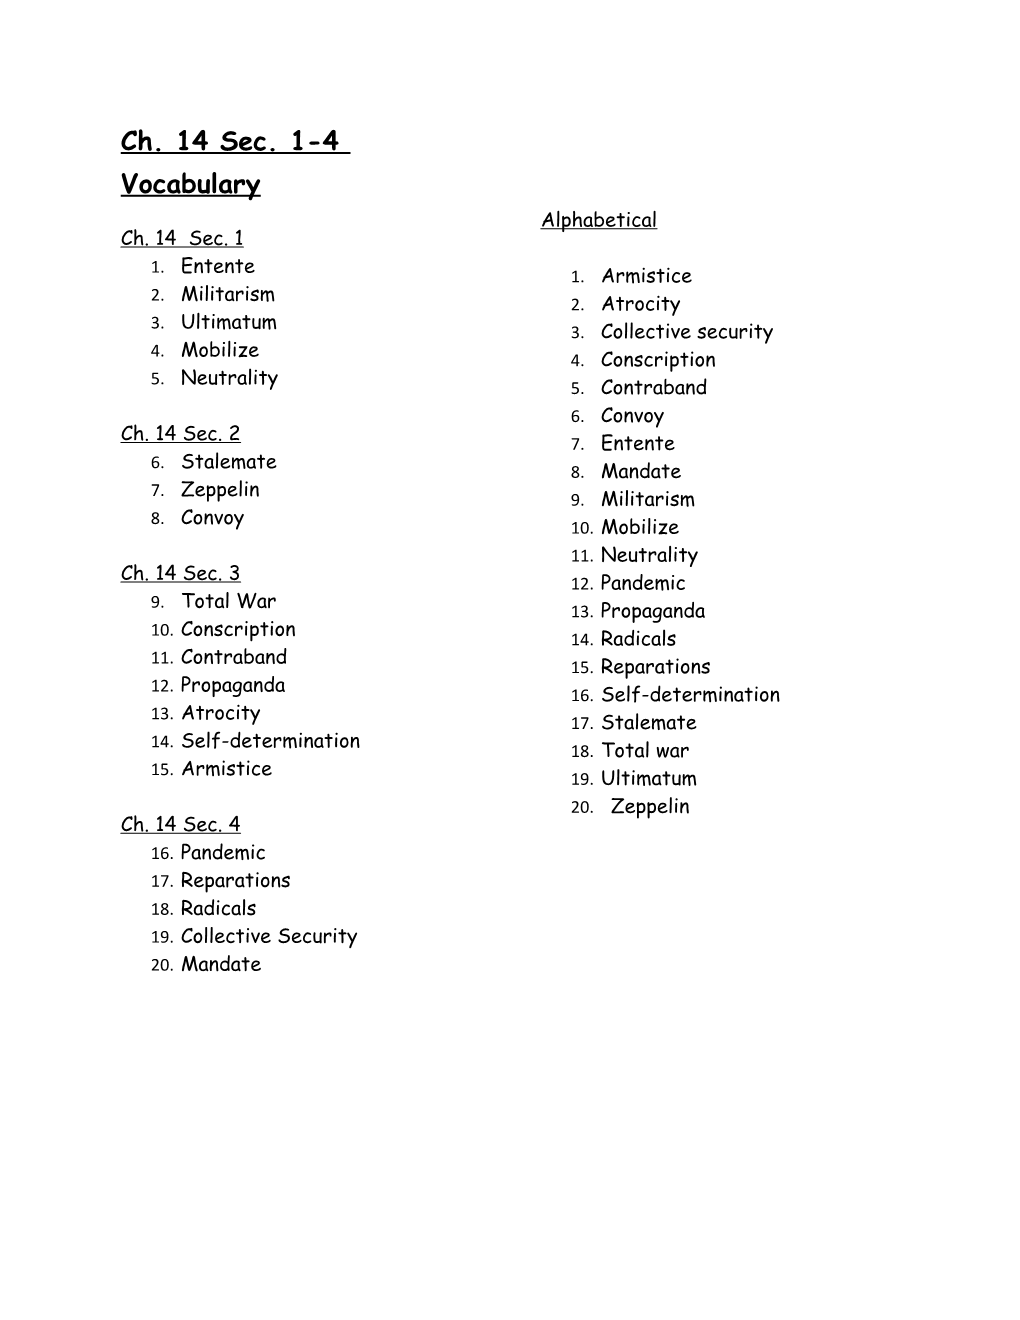 Ch. 14 Sec. 1-4 Vocabulary